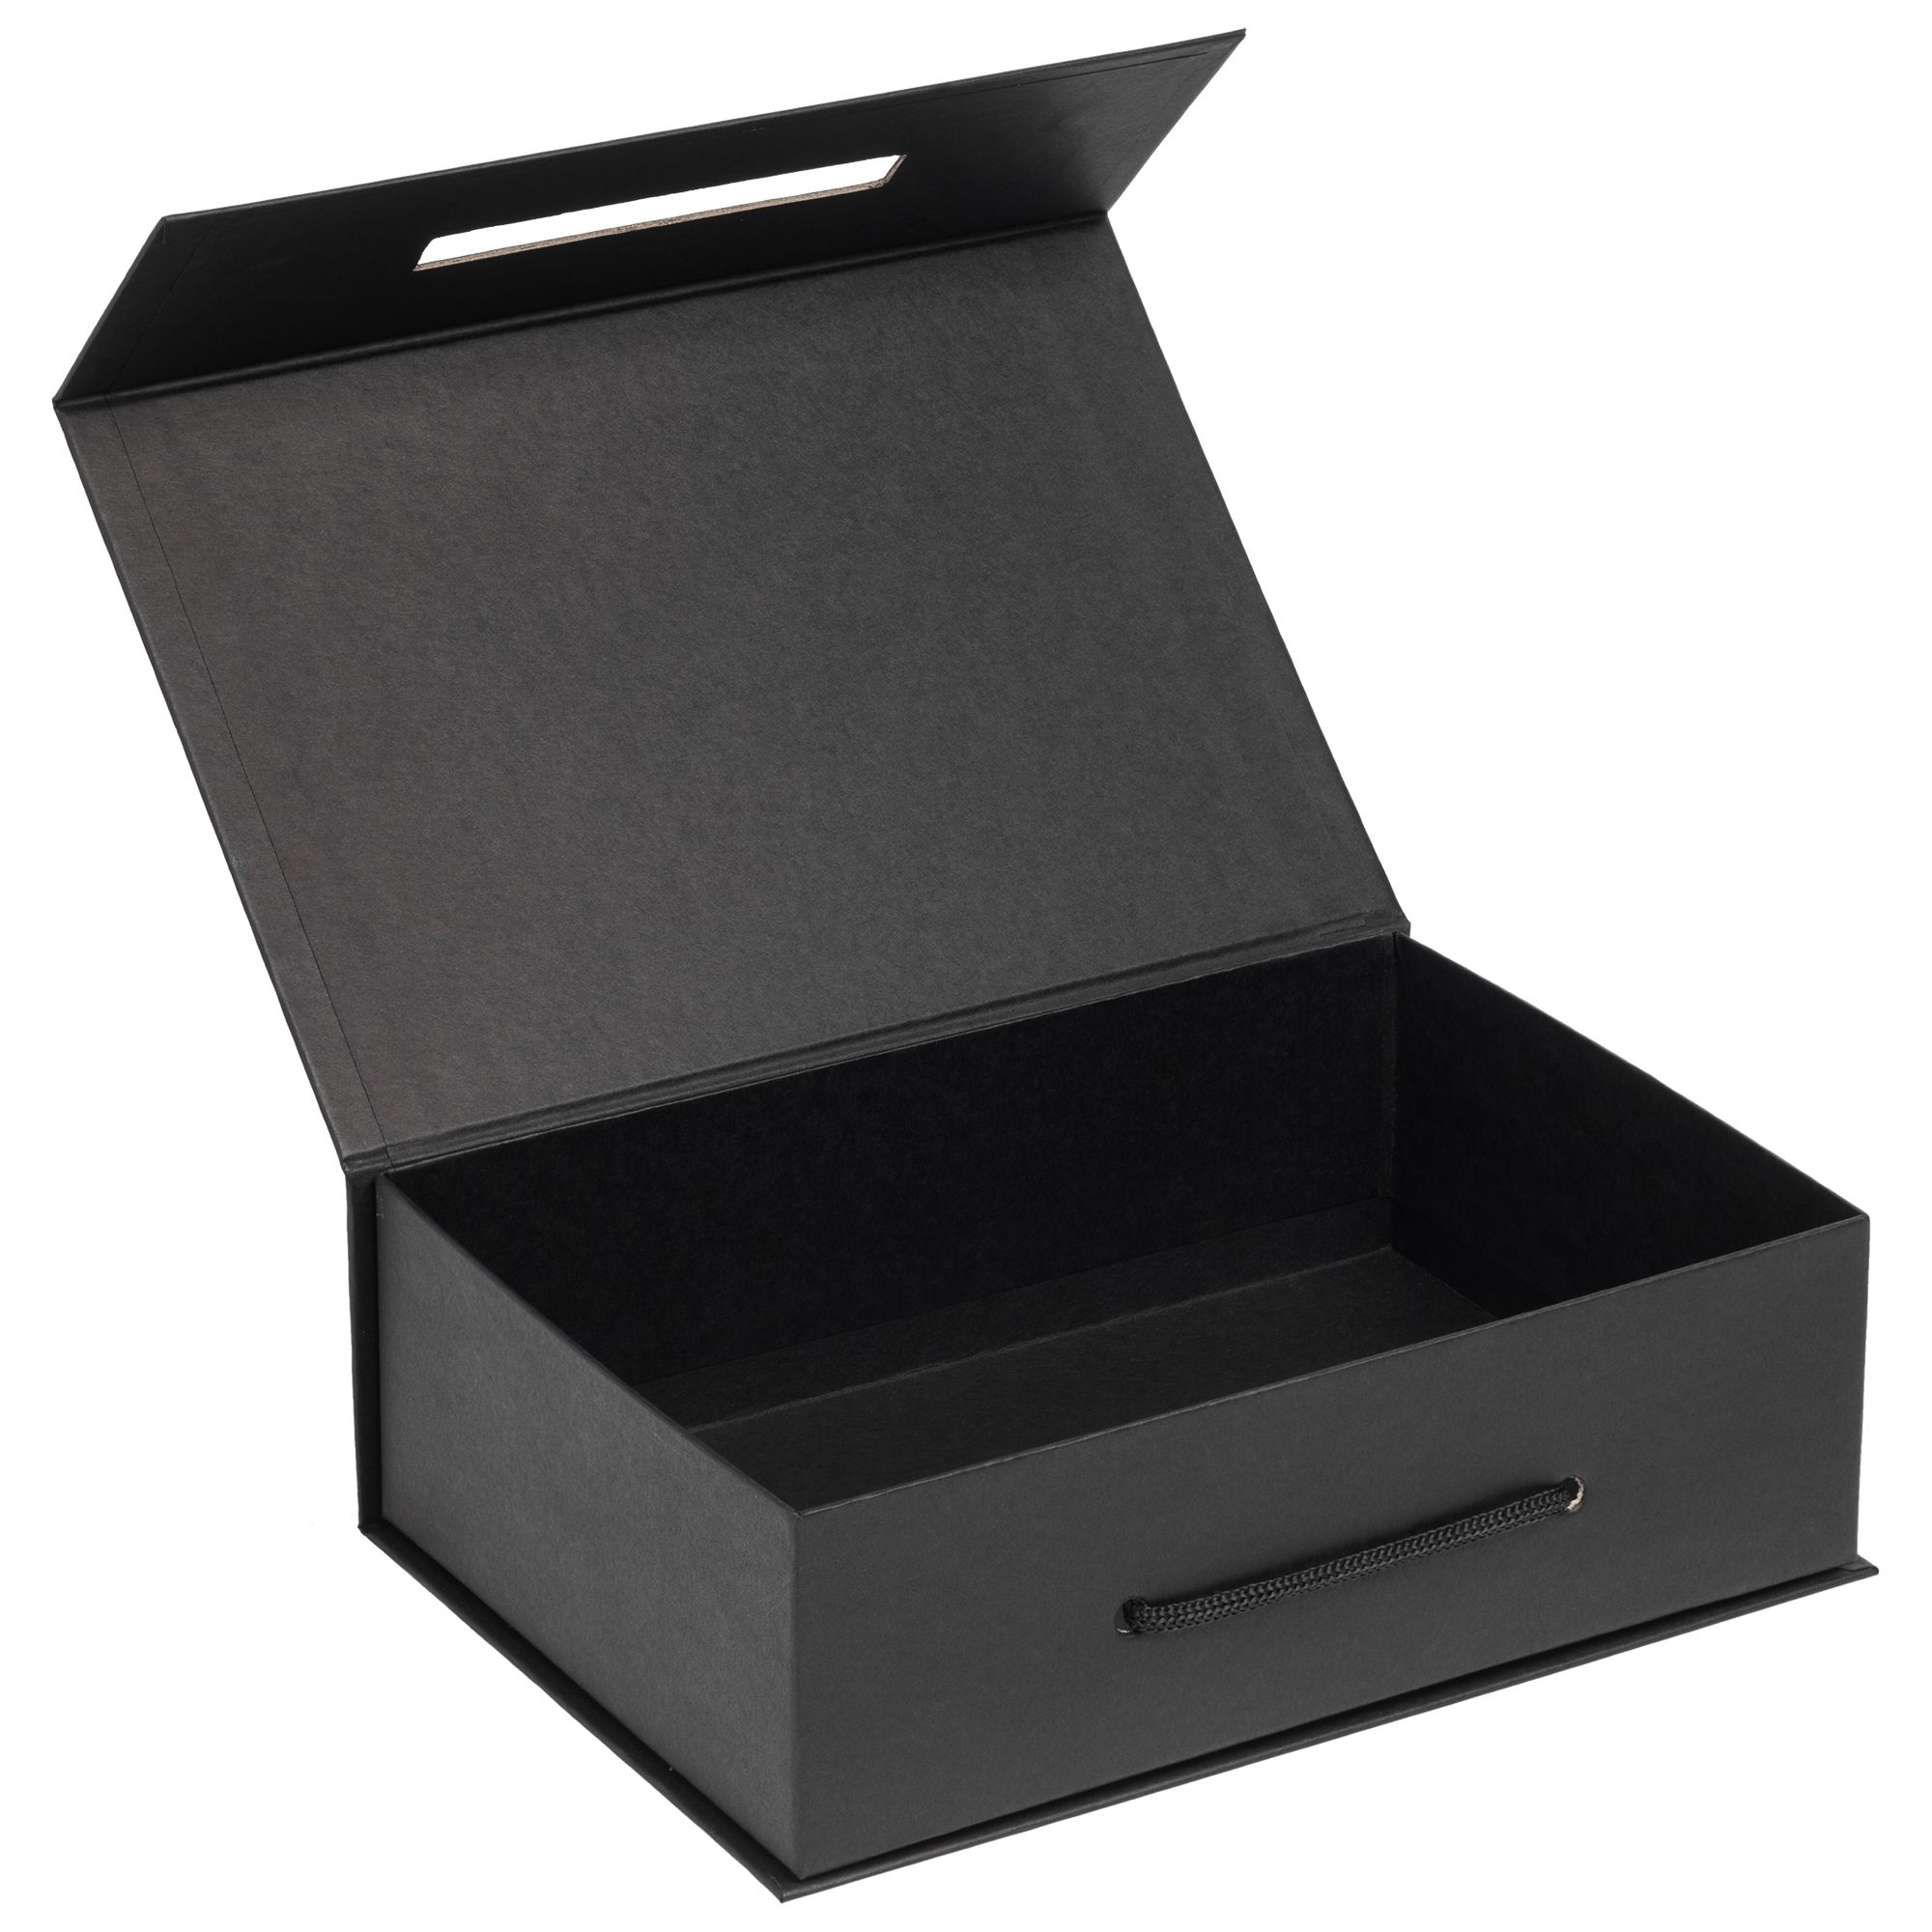 Картонная коробка для подарка. Коробка чёрная кашированный картон 23/20/6 с лонжементом. Подарочная коробка. Упаковка коробки. Коробка упаковочная картонная.